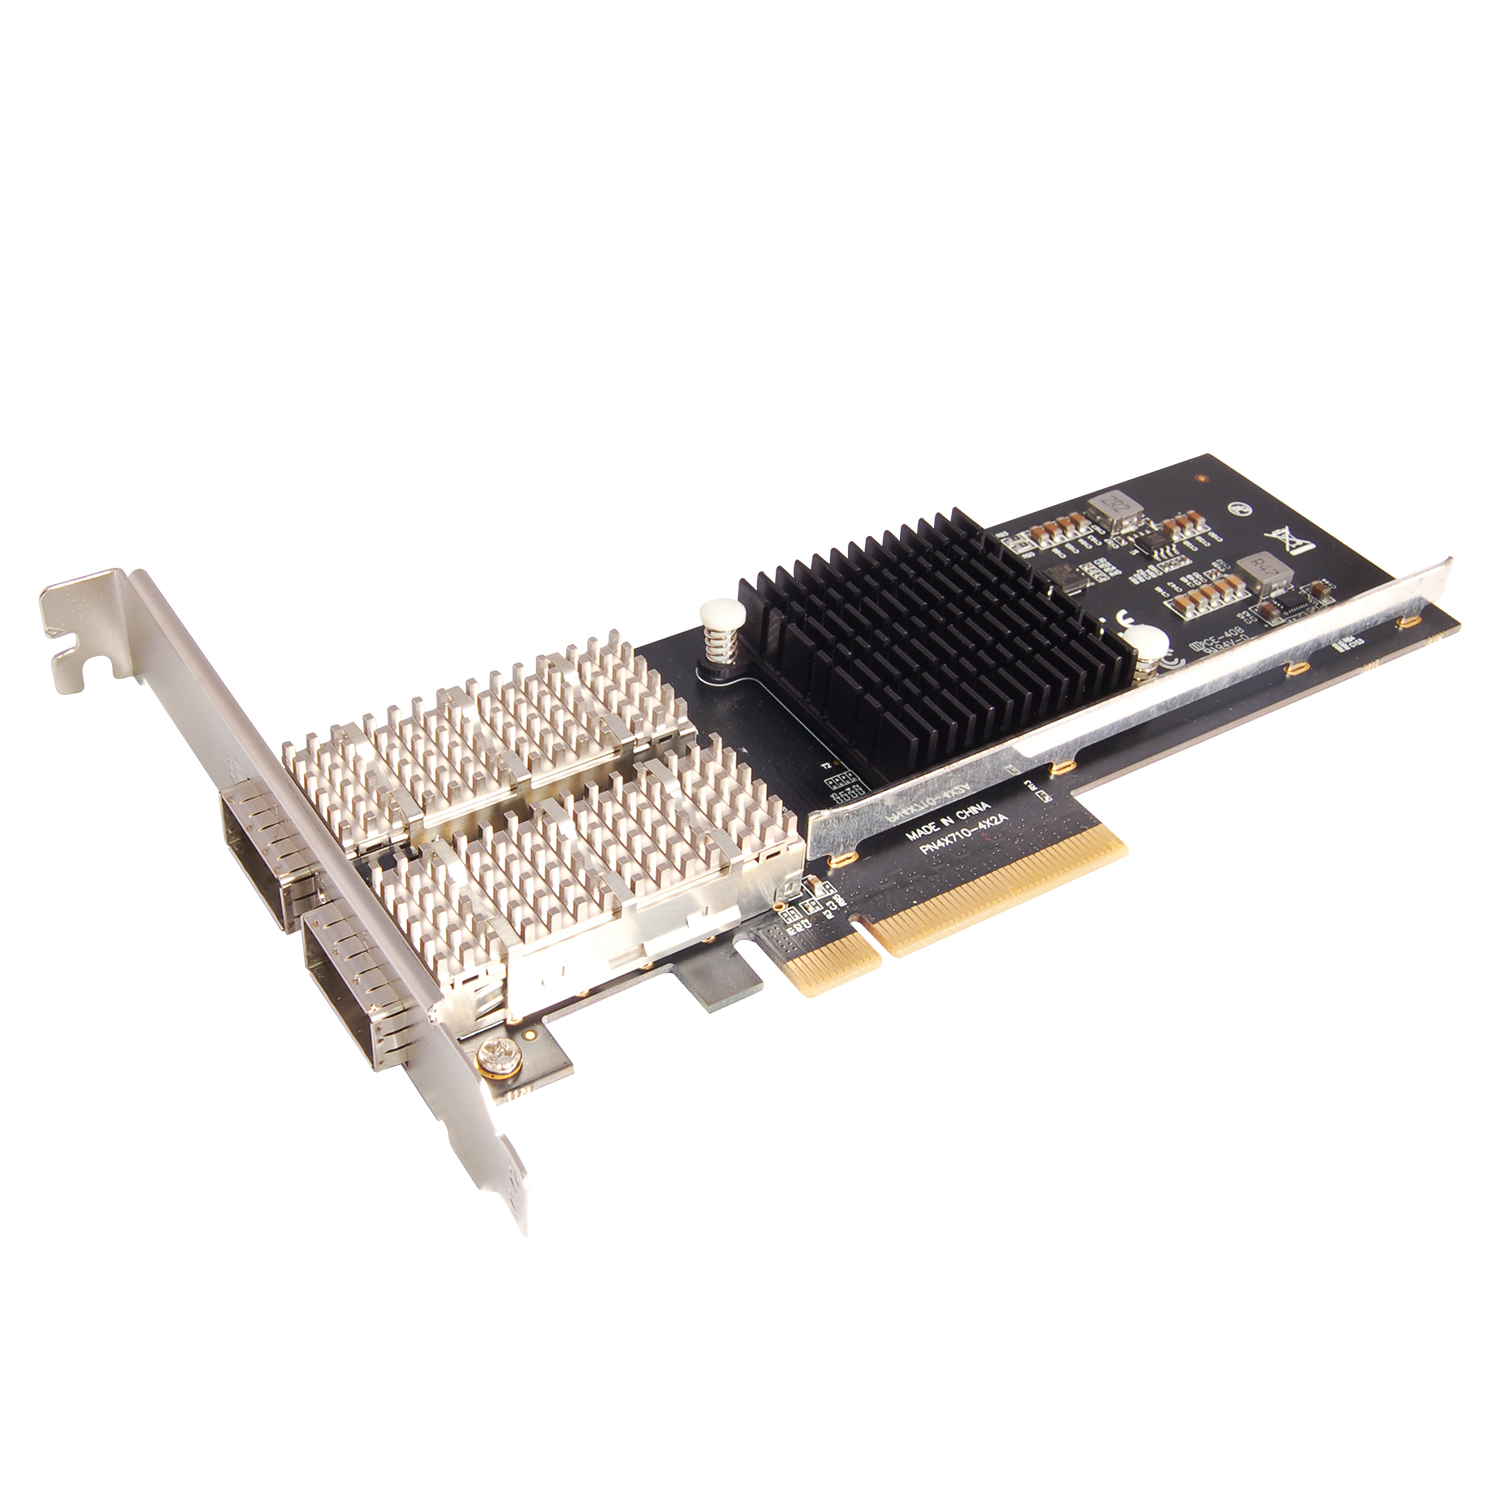 N-570 Intel PCIe 2-Port 40G QSFP+ Netword Card